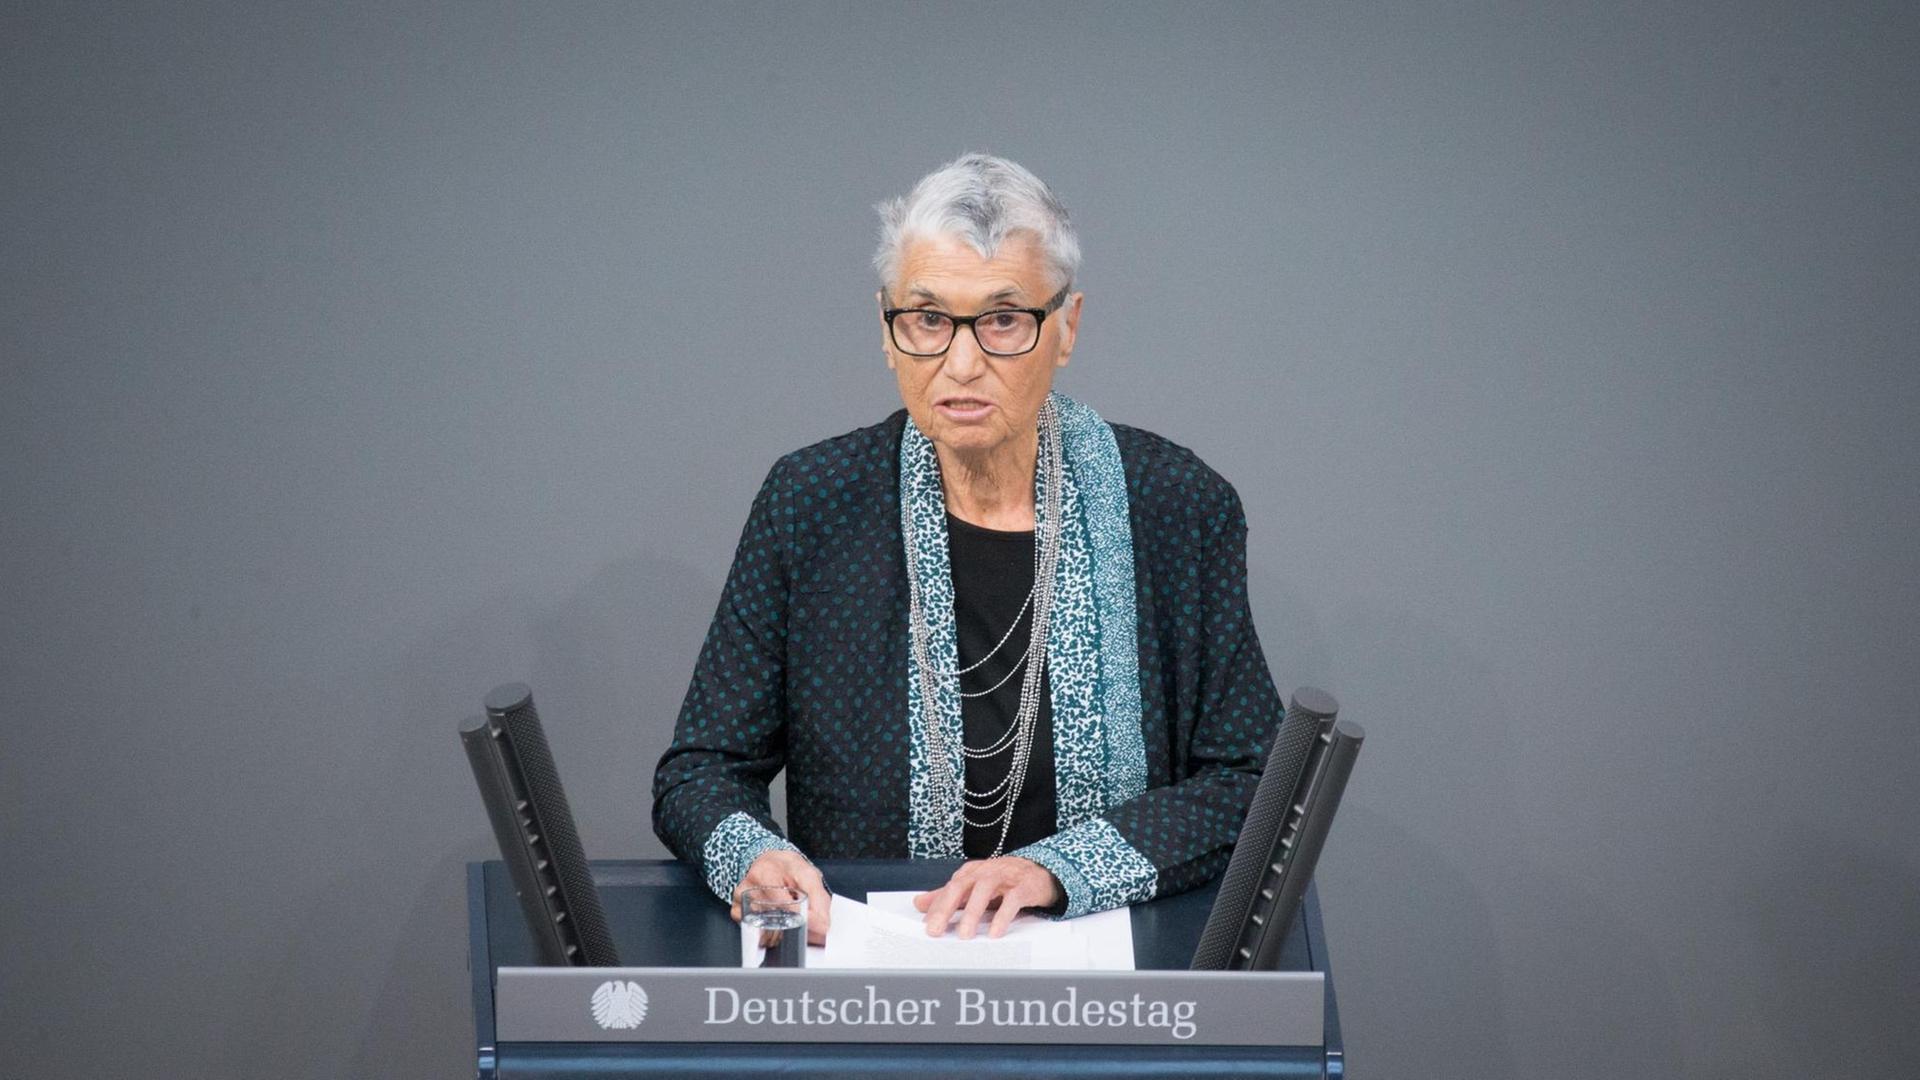 Die Holocaust-Überlebende Ruth Klüger spricht am 27.01.2016 in Berlin im Bundestag bei der Gedenkveranstaltung.